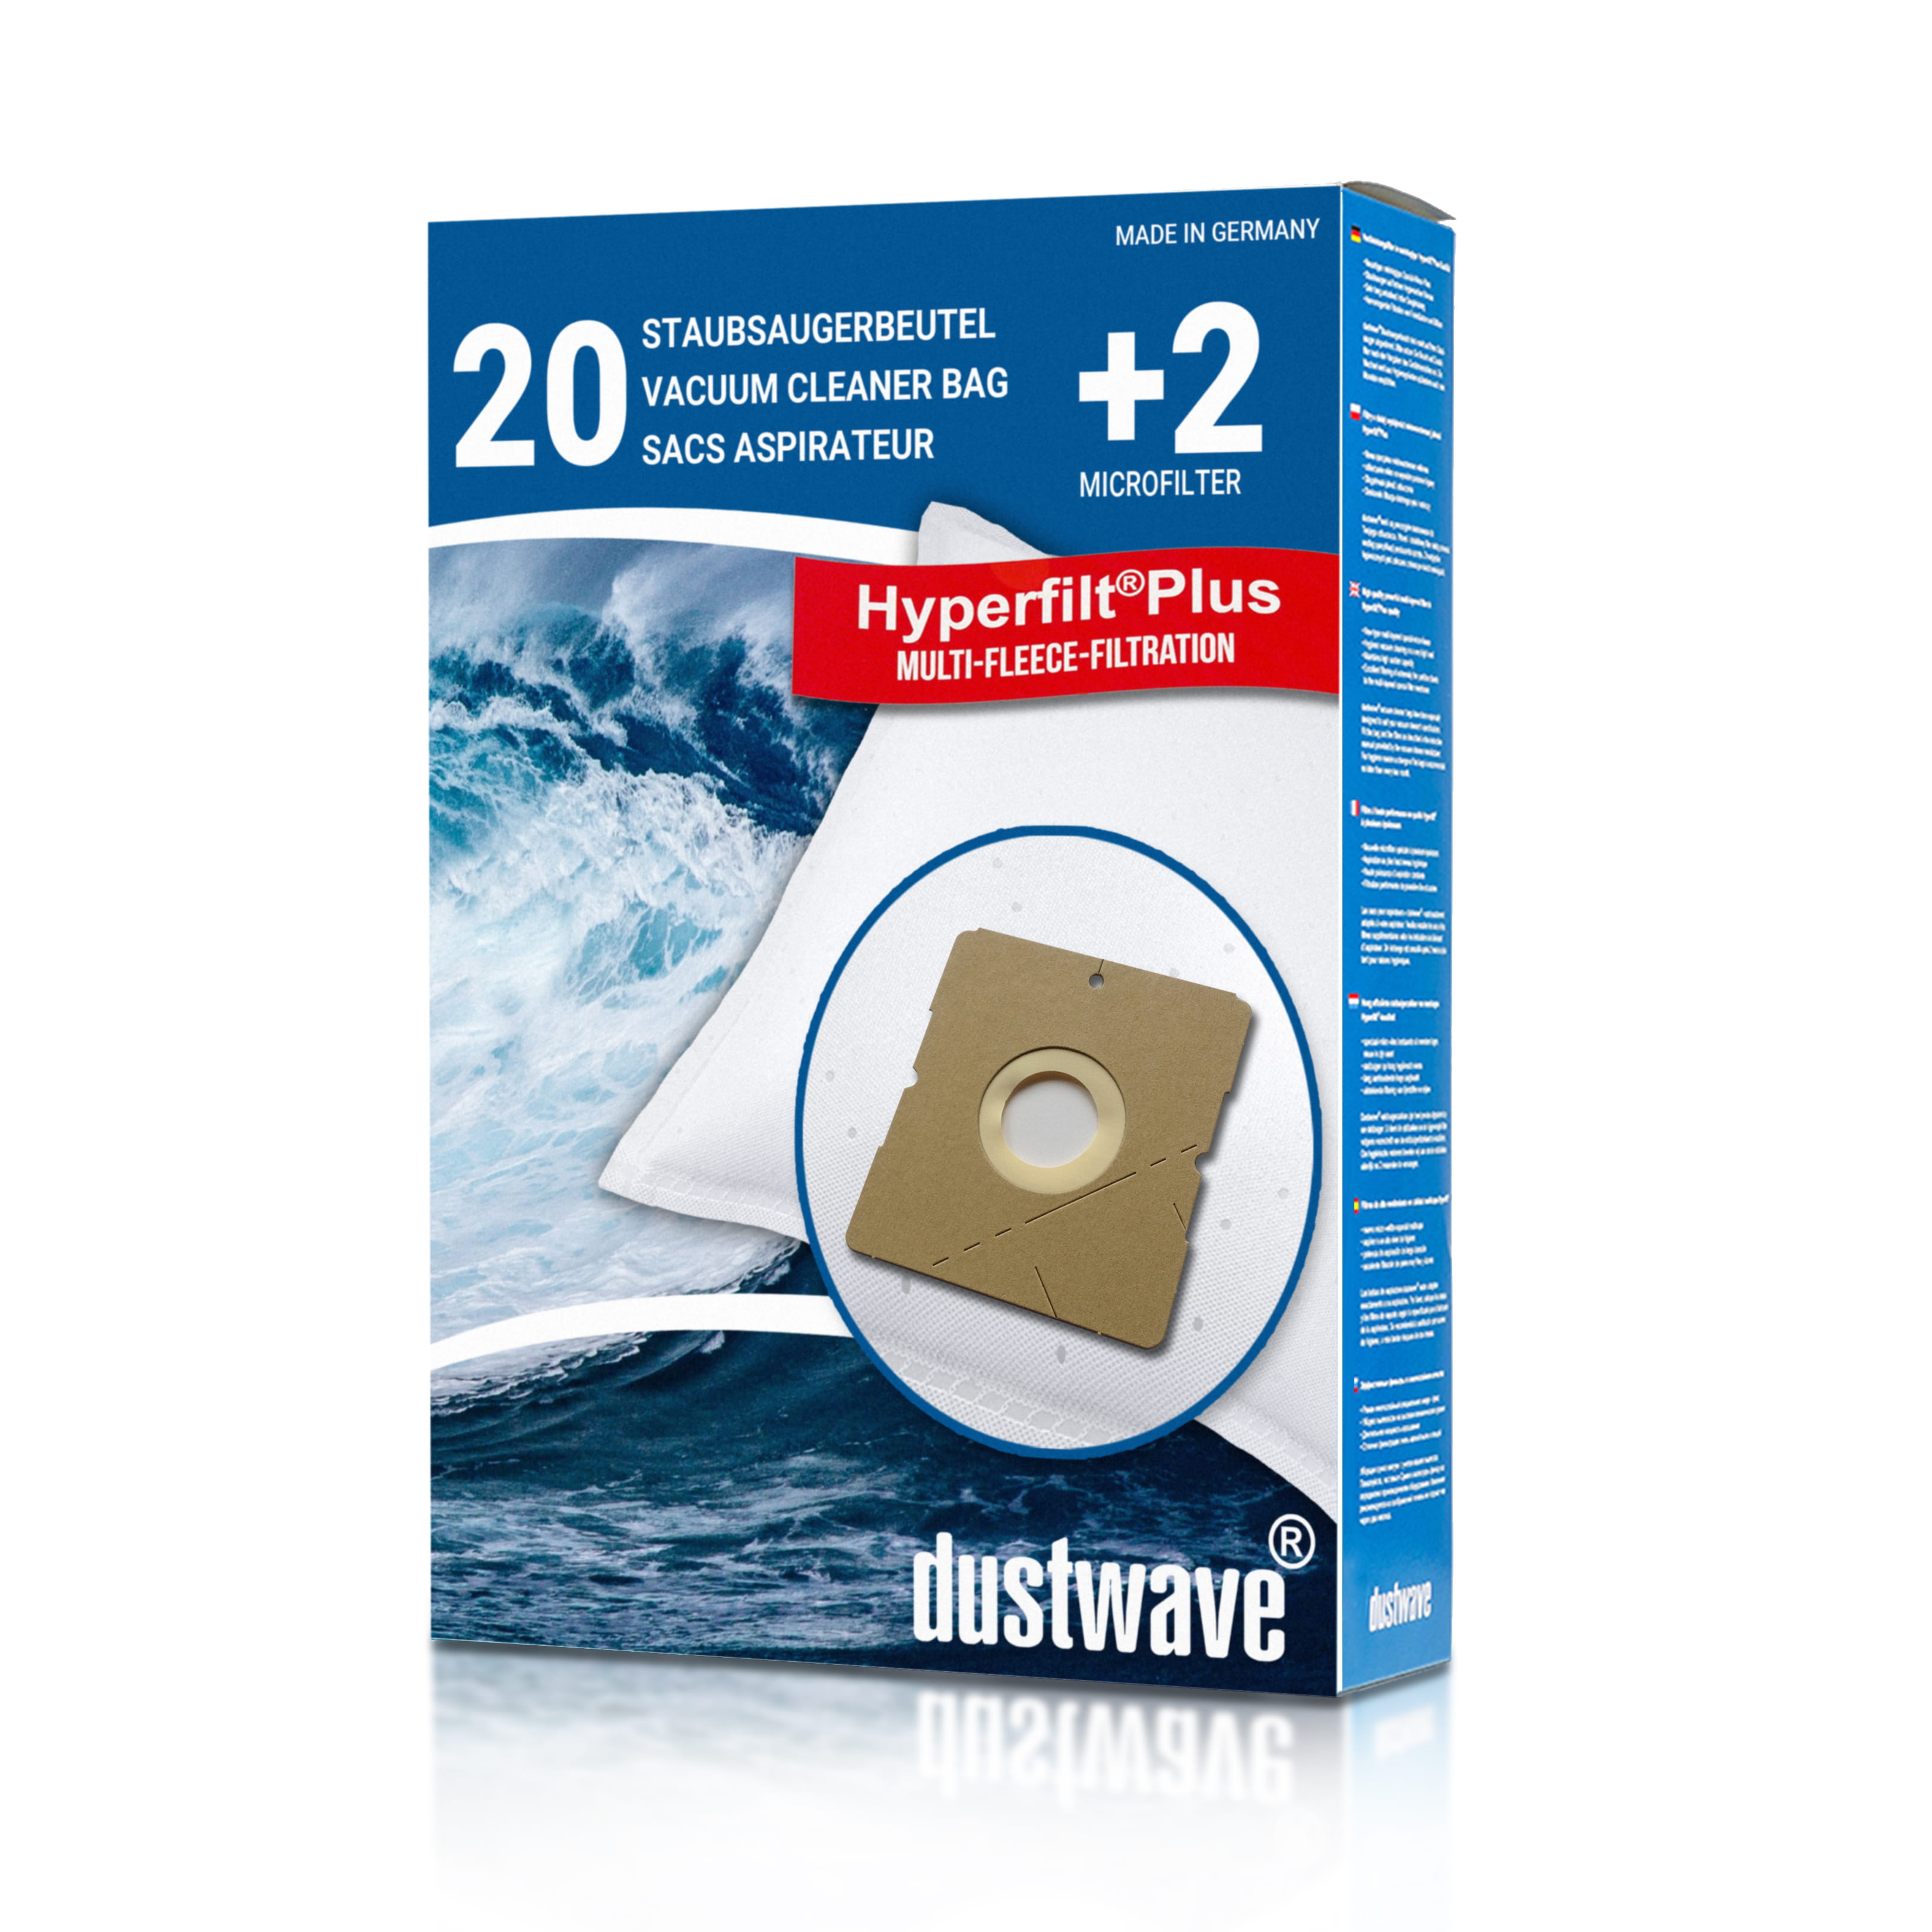 Dustwave® 20 Staubsaugerbeutel für Hoover H 4 / H4 - hocheffizient, mehrlagiges Mikrovlies mit Hygieneverschluss - Made in Germany